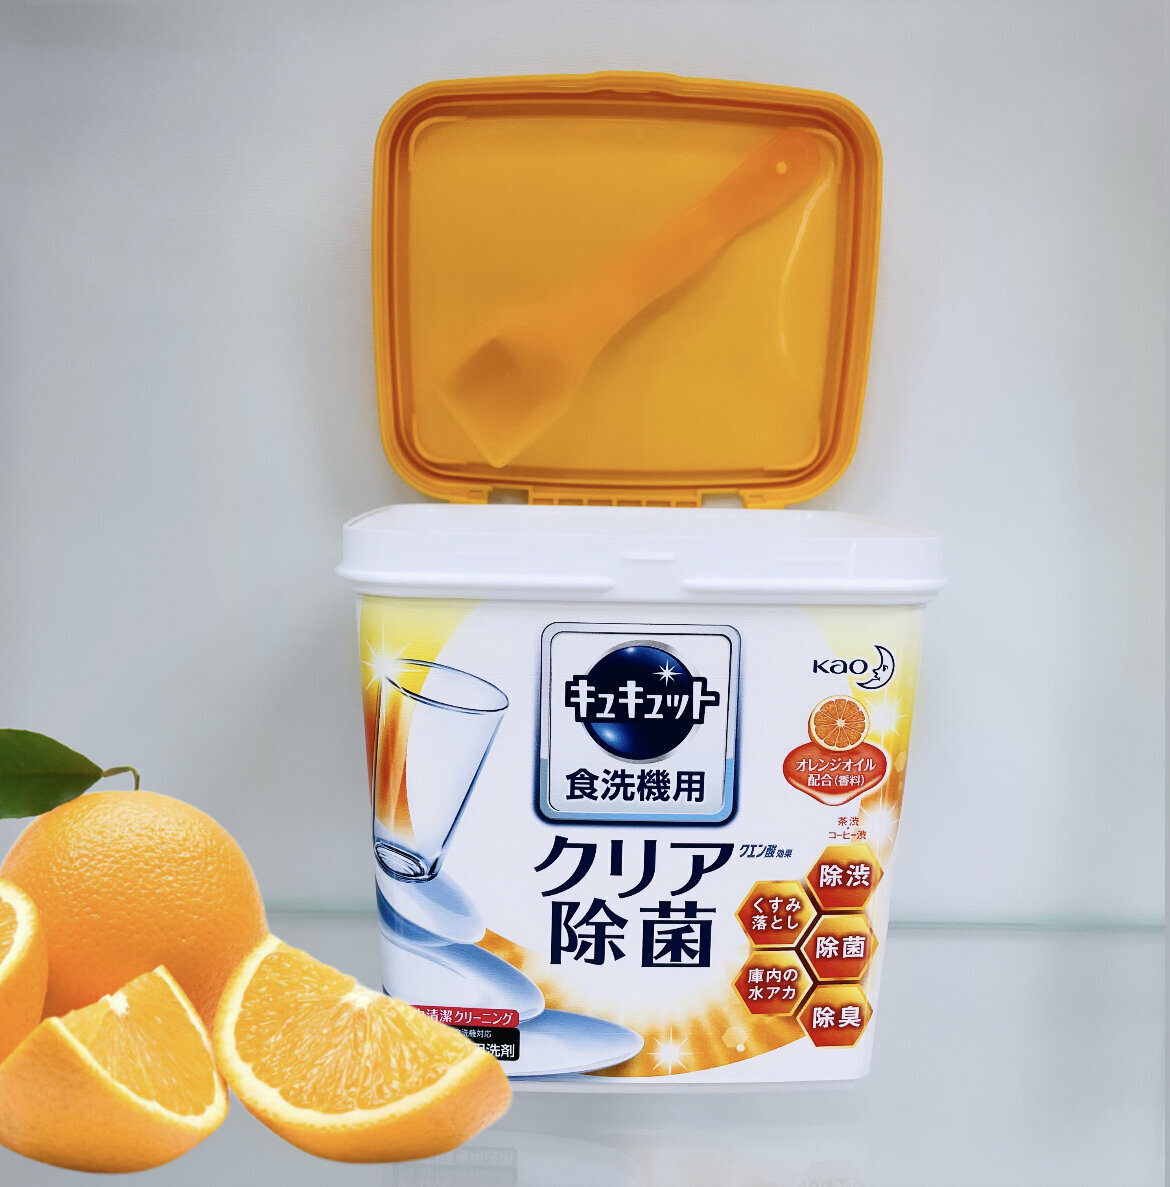 Порошок для посудомоечной машины Kao CuCute порошок (апельсин)